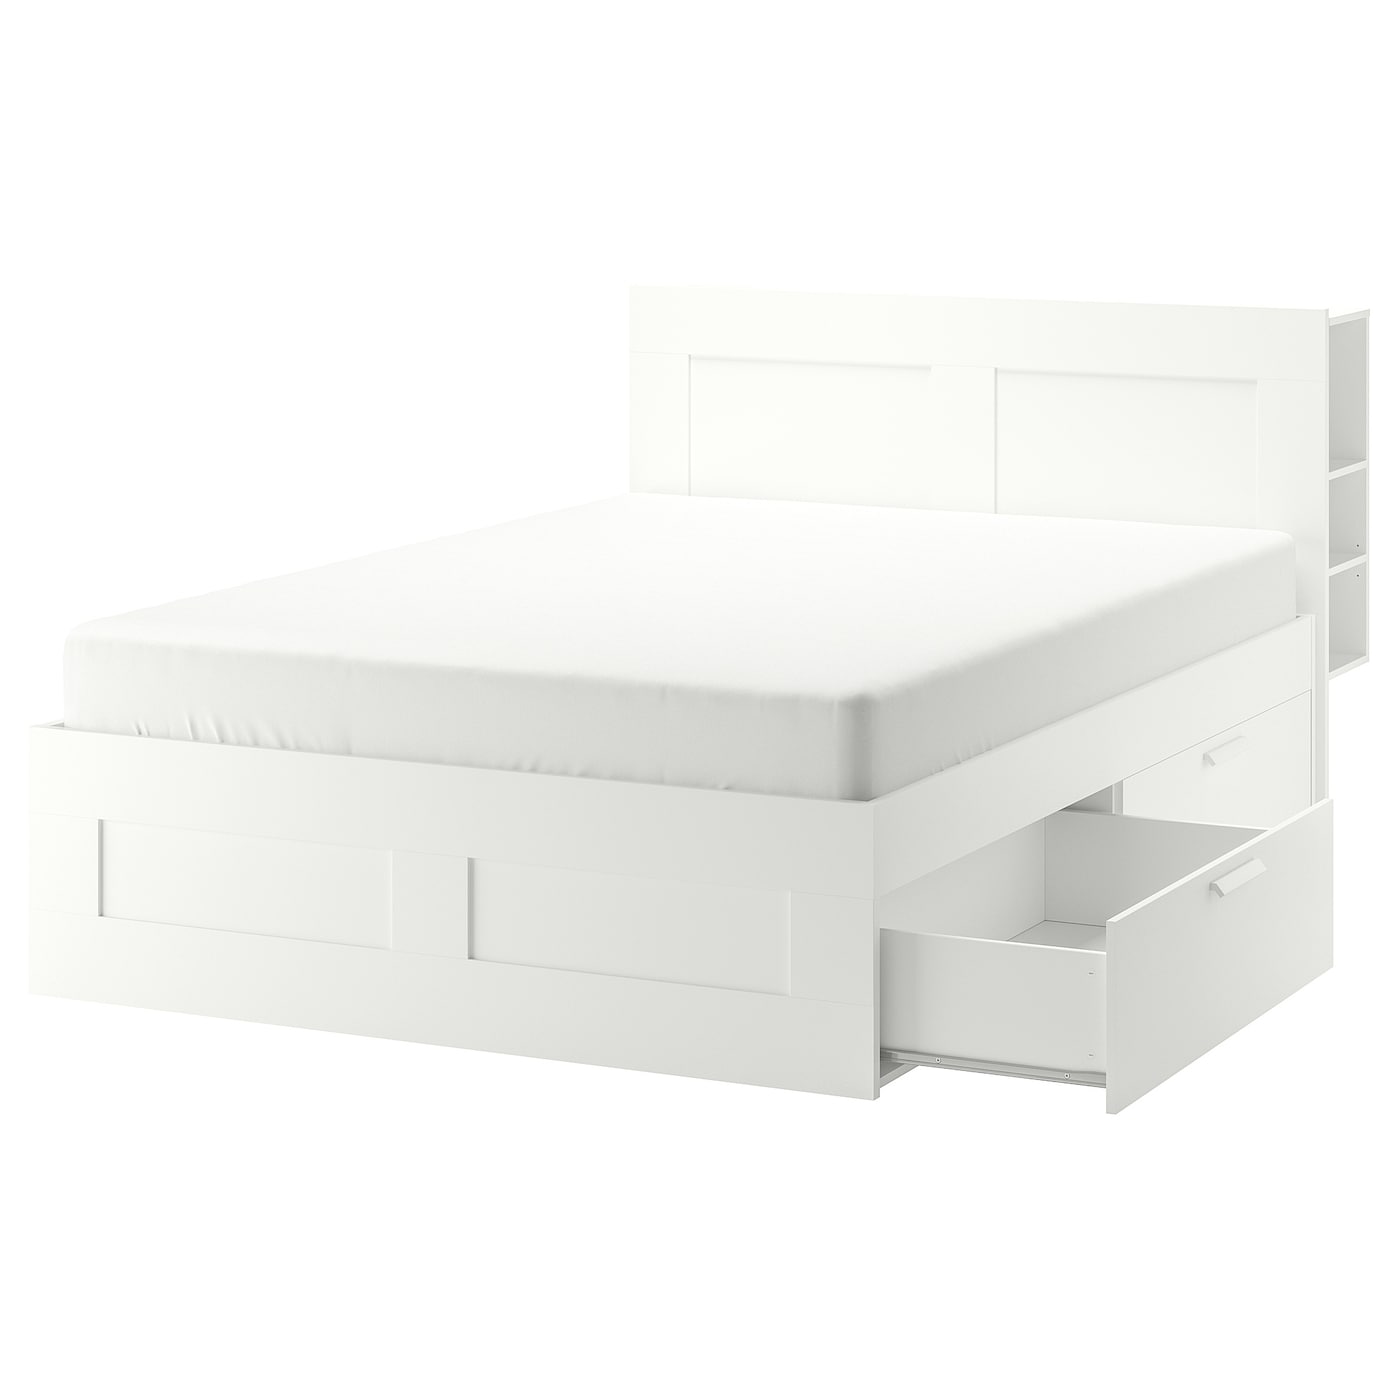 Каркас кровати с ящиком для хранения - IKEA BRIMNES, 200х180 см, белый, БРИМНЕС ИКЕА